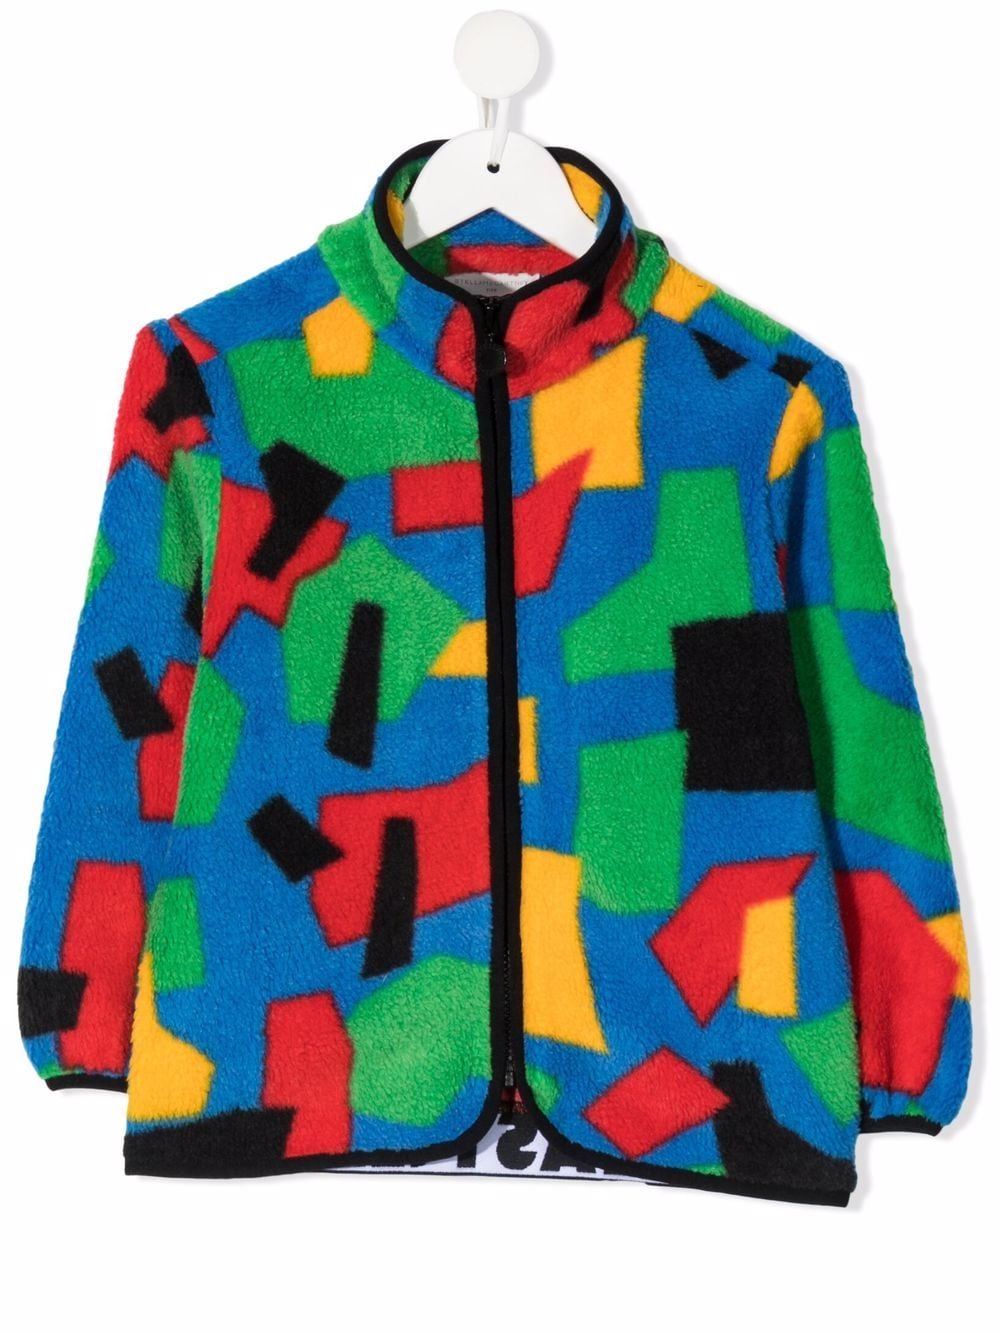 фото Stella mccartney kids флисовая куртка с геометричным узором